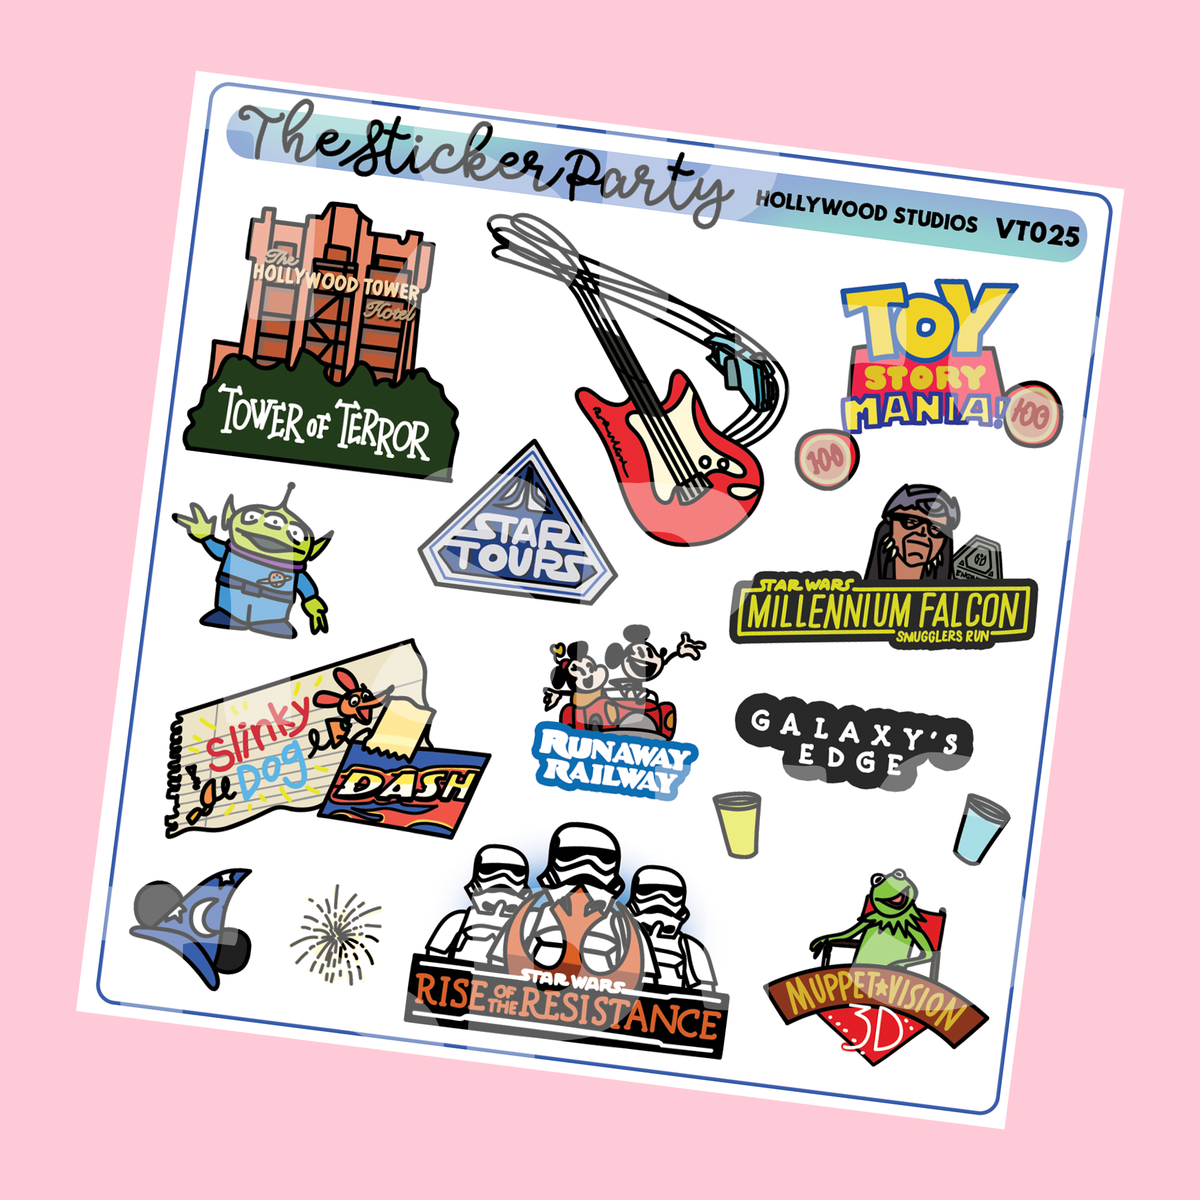 M*gic Kingdom Planner Stickers WDW Planner Stickers – The Sticker